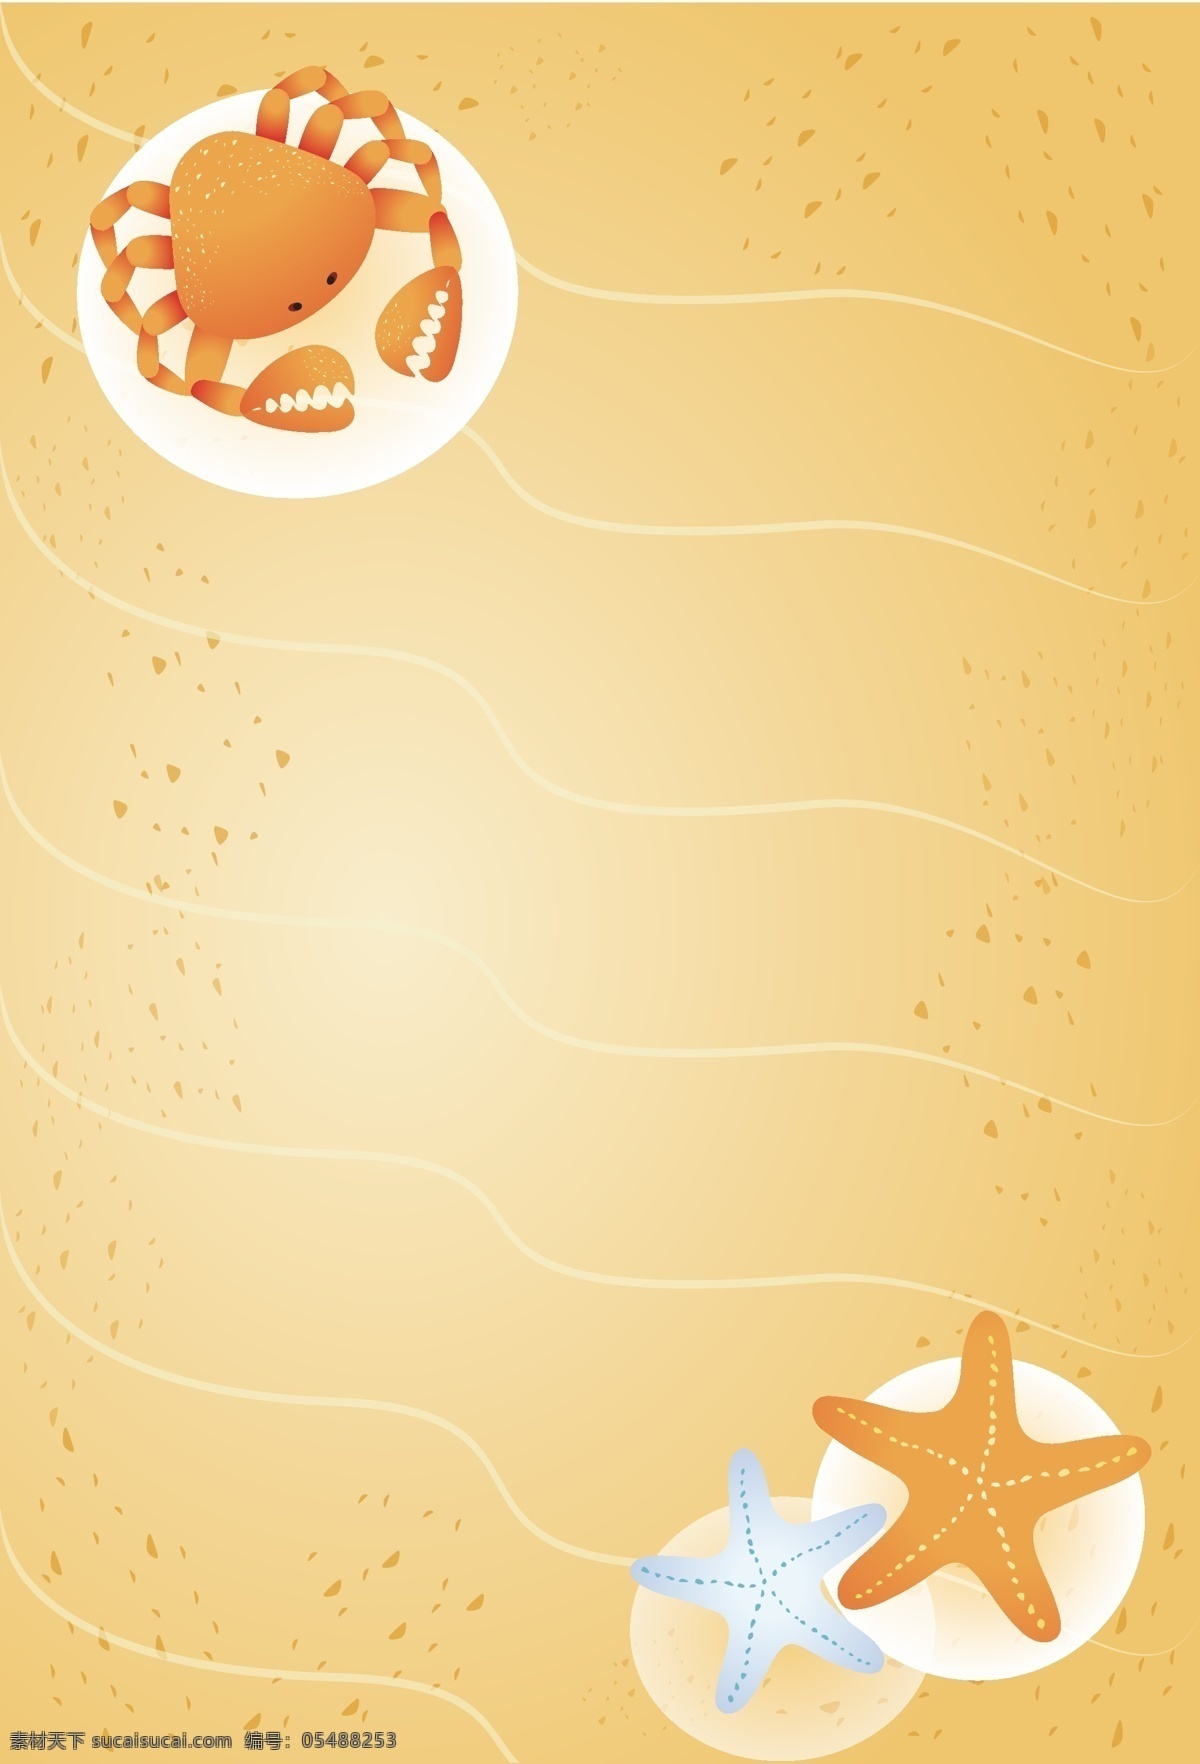 可爱 手绘 螃蟹 海星 沙滩 海报 背景 风景 海浪 热带 度假 风情 休闲 矢量 开心